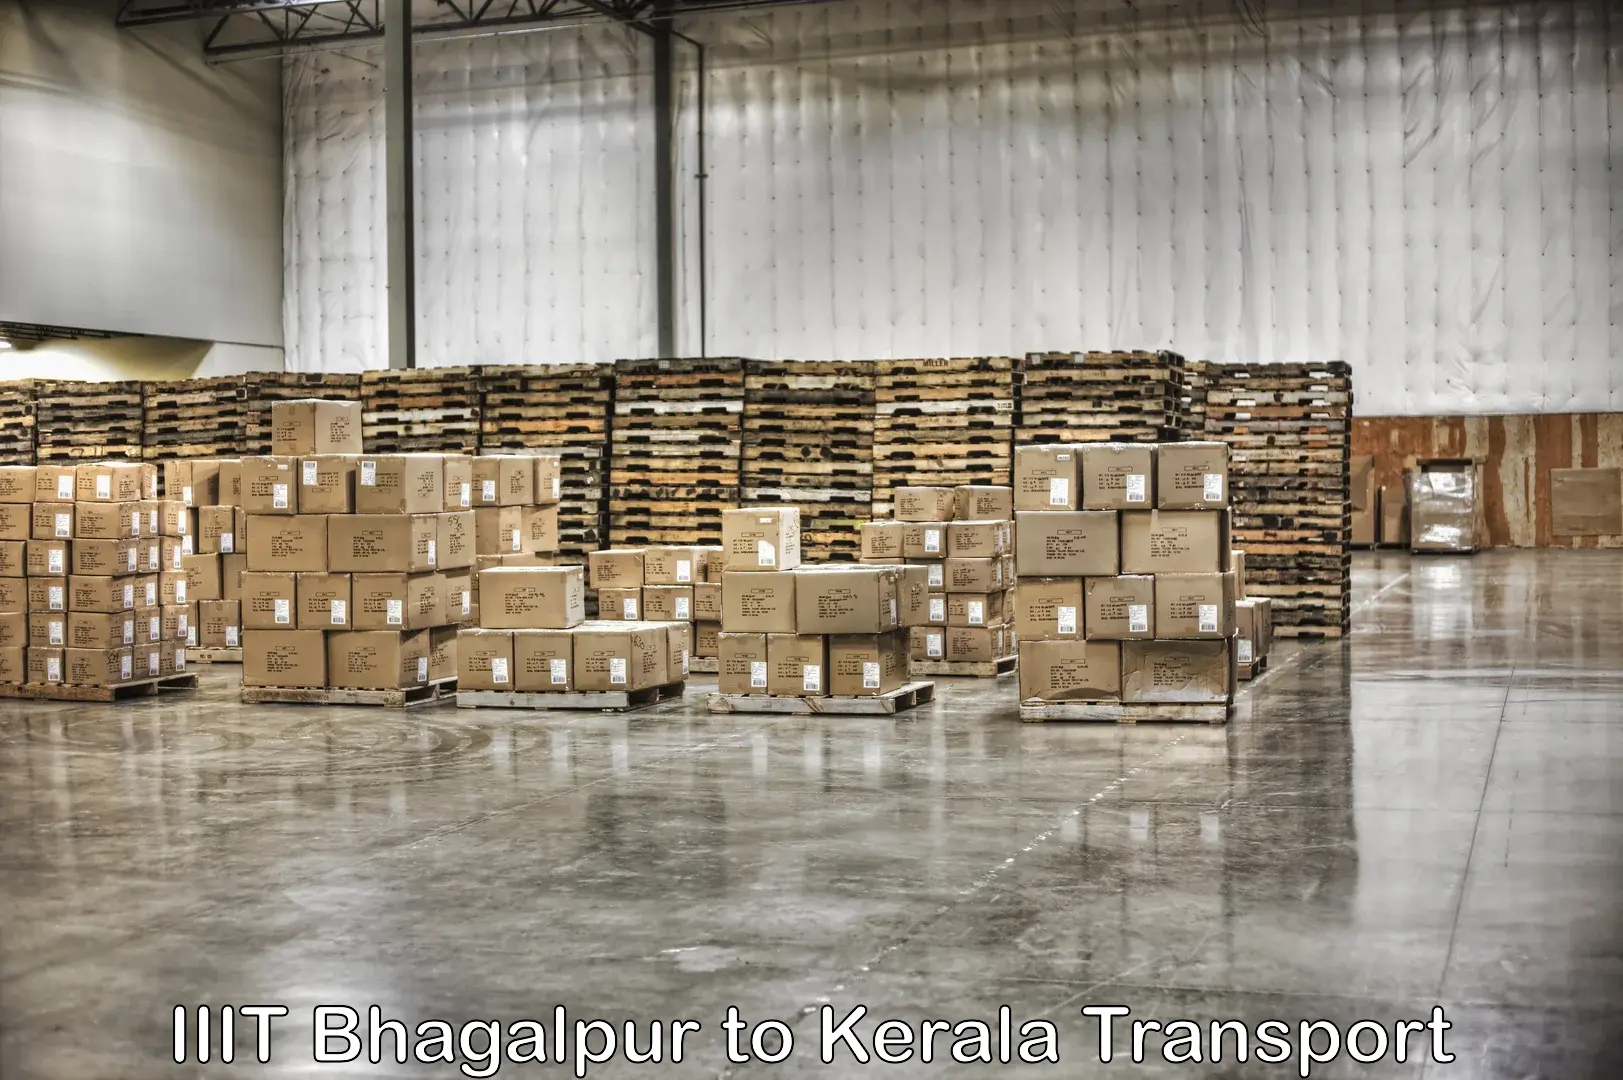 Land transport services IIIT Bhagalpur to Neyyattinkara